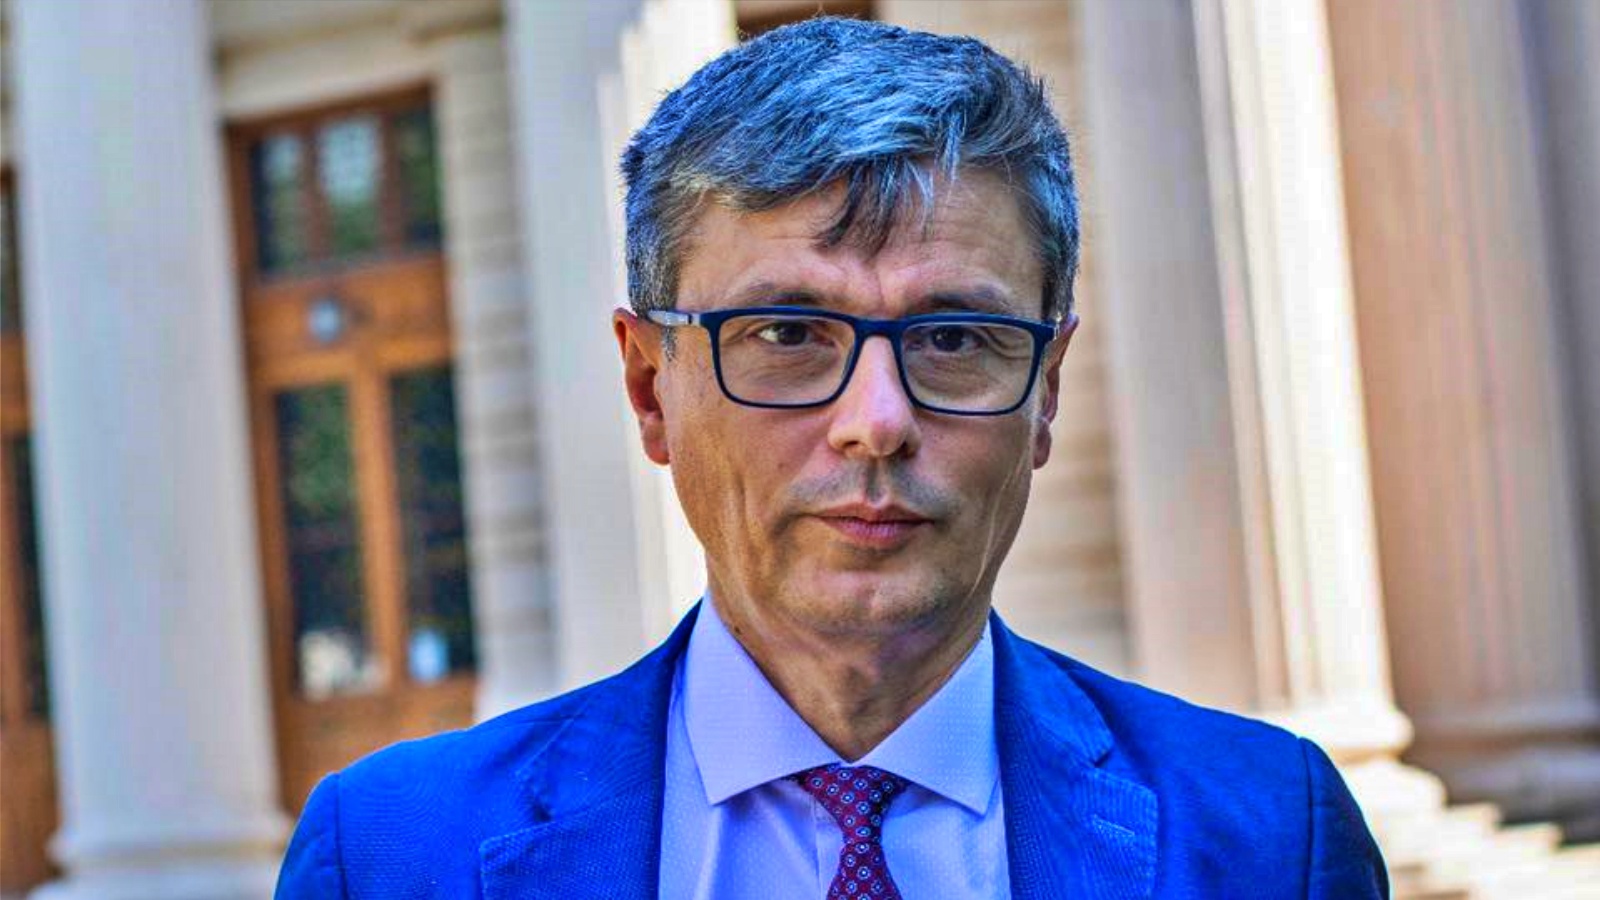 Virgil Popescu Informatie Belangrijke beslissing Energie Roemenië